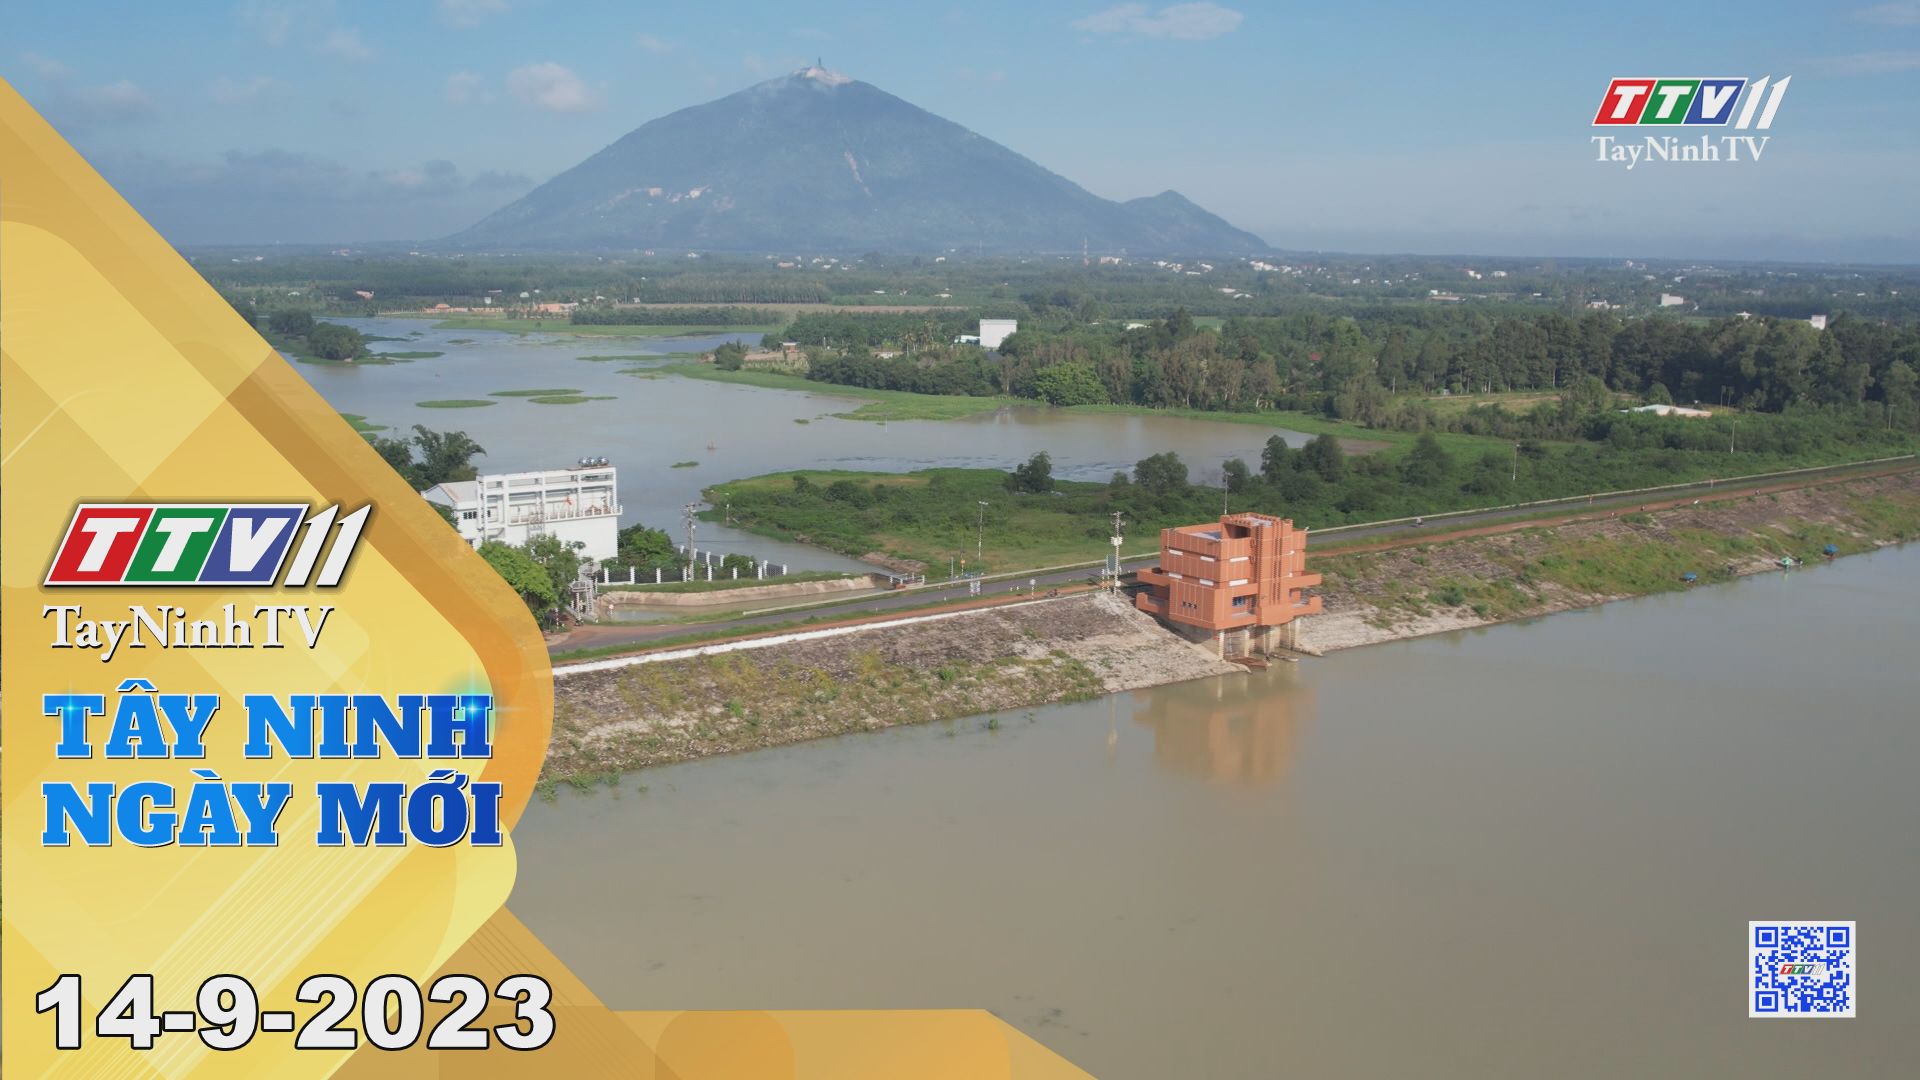 Tây Ninh ngày mới 14-9-2023 | Tin tức hôm nay | TayNinhTV